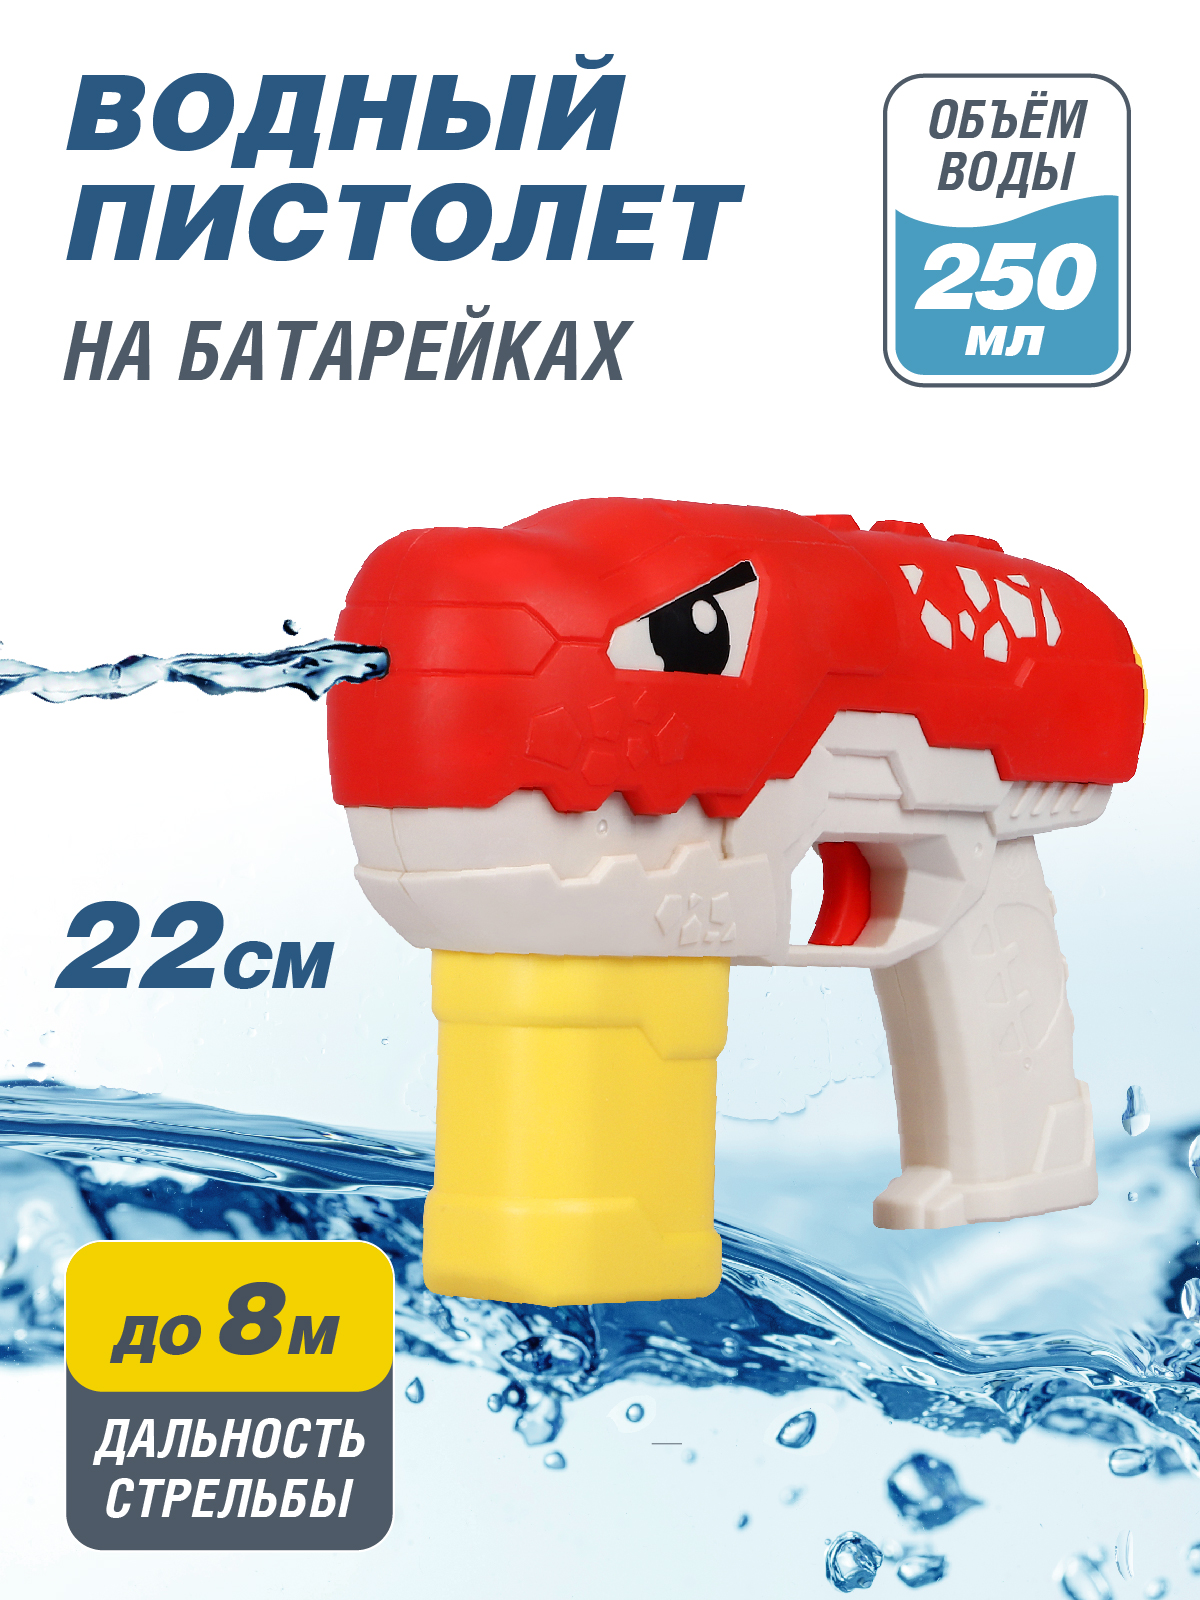 Водяное игрушечное оружие Маленький воин на батарейках, JB0211500 водяное оружие на батарейках пистолет игрушечный с функцией спрея водный бой jb0211505